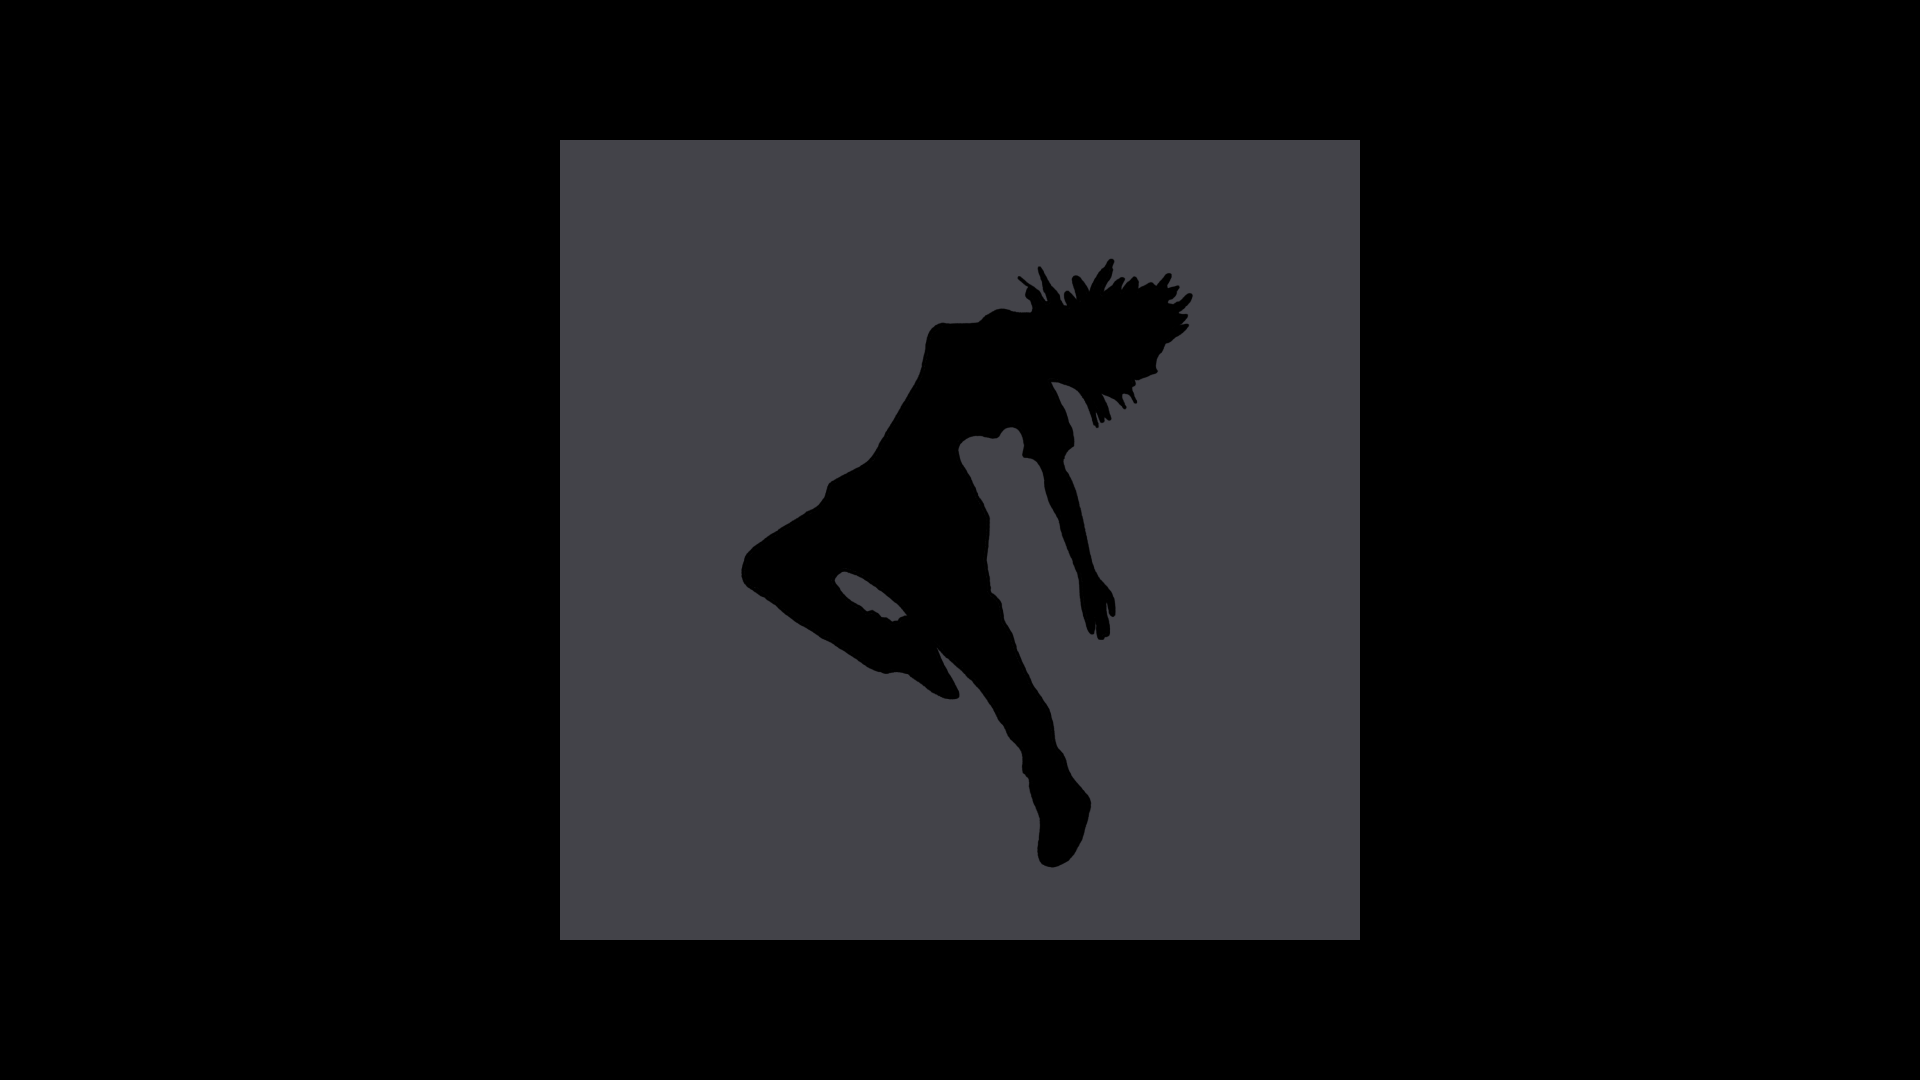 Shadowdancer: Dark Sounds for Open Minds